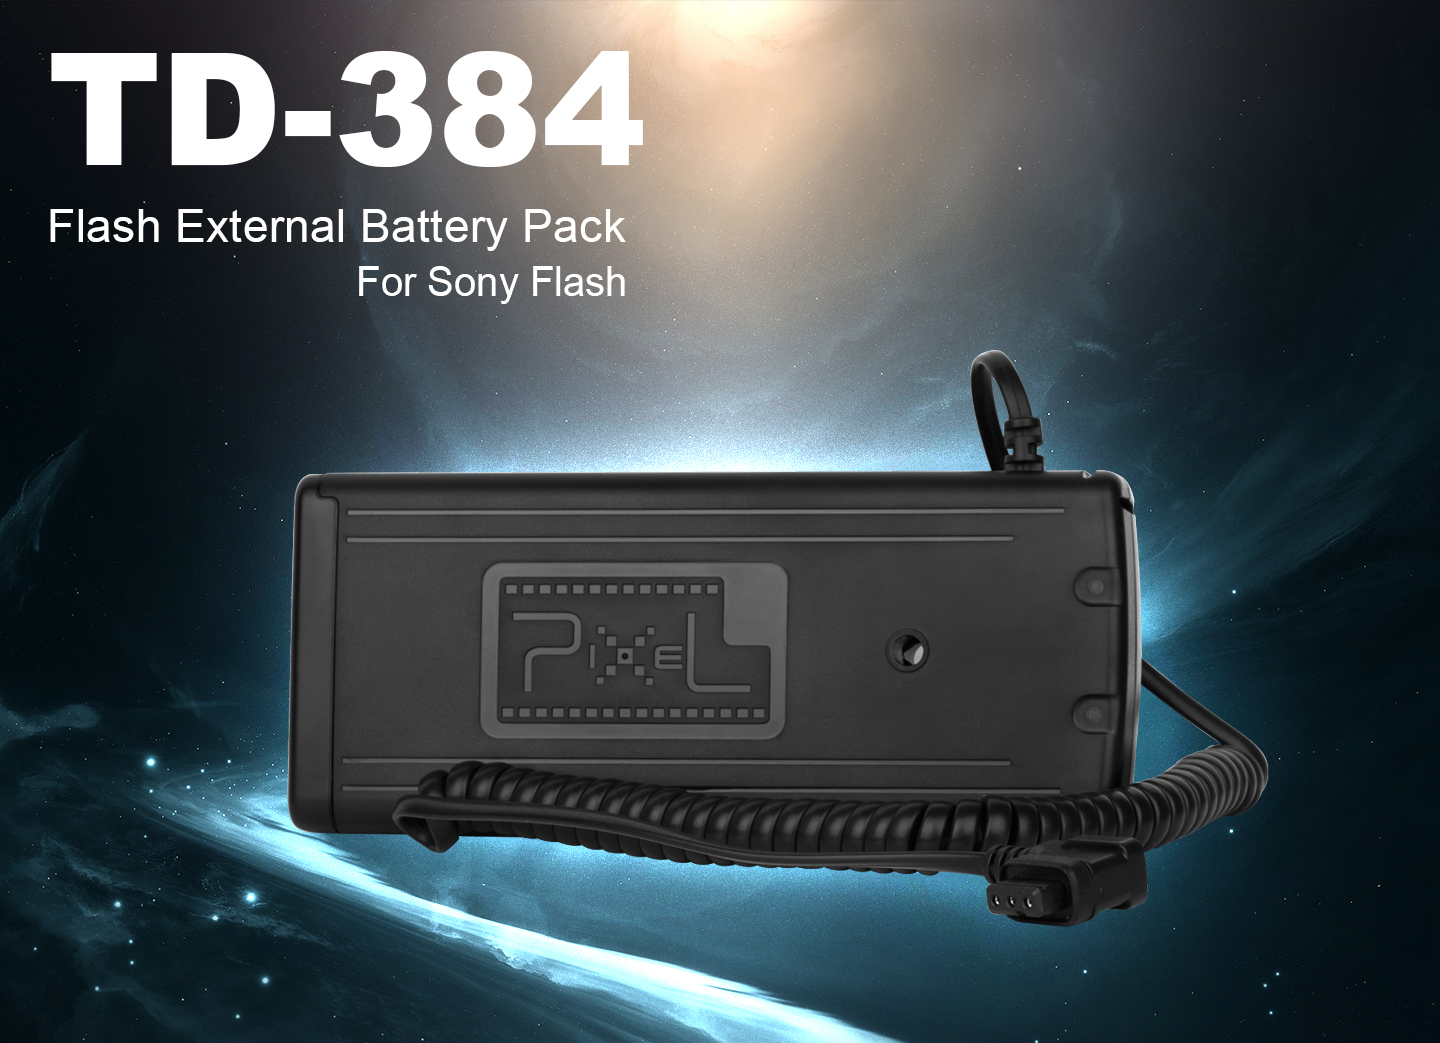 TD-384 Flash External Battery Pack